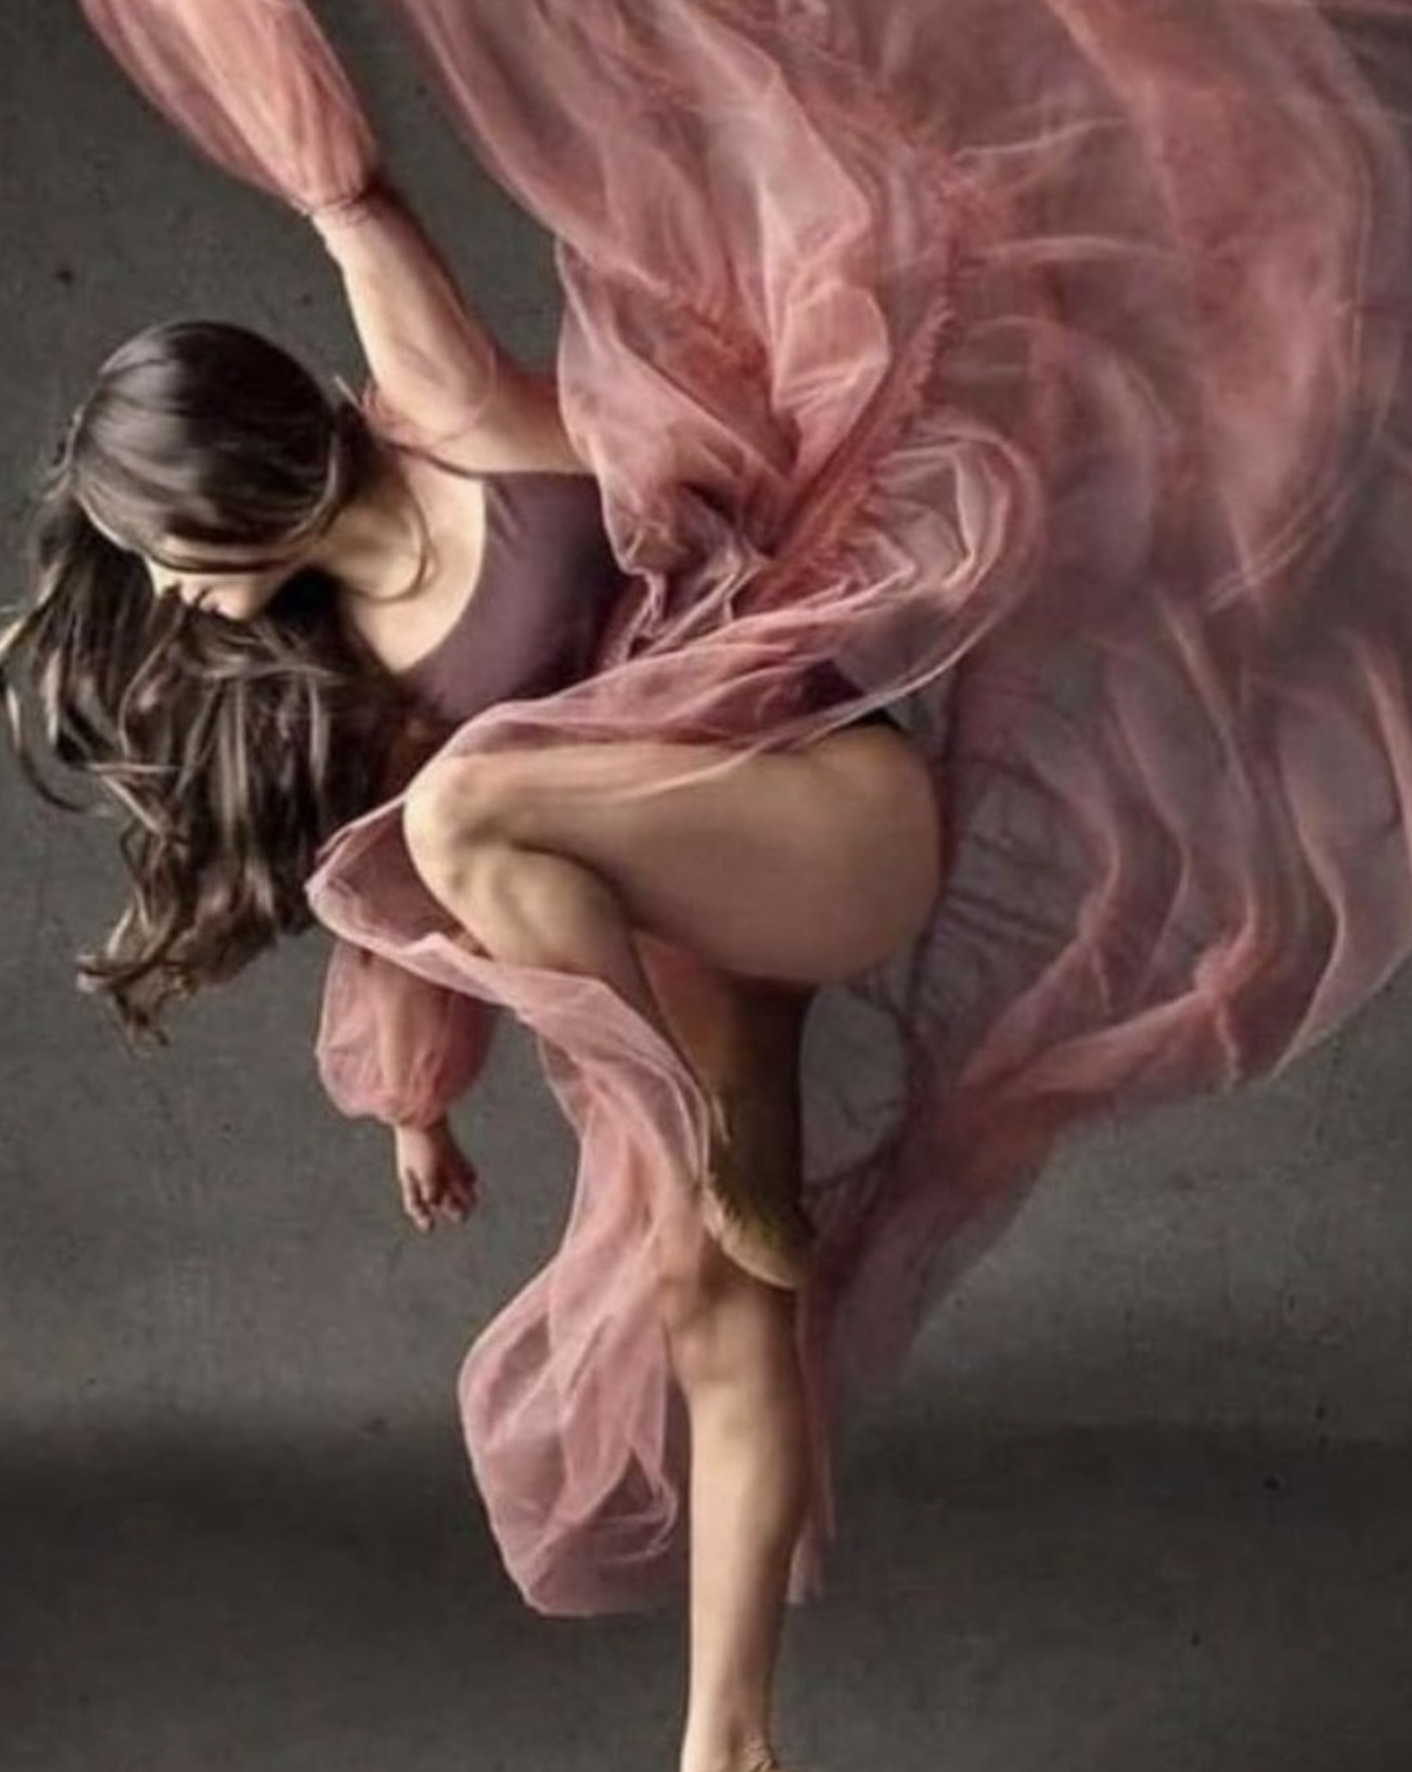 Disciplinas de ballet que esculpen el cuerpo como el de una bailarina